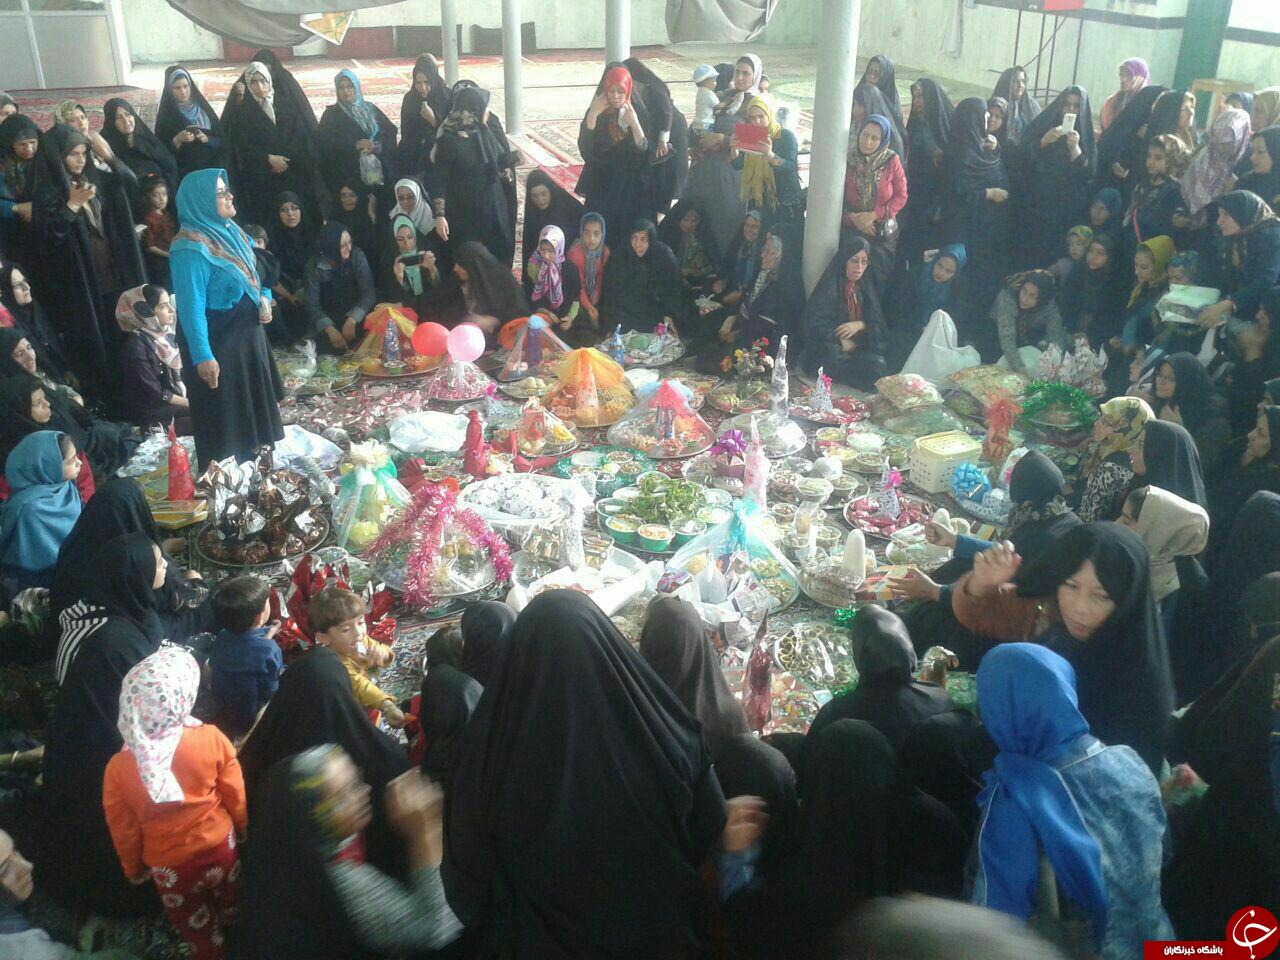 آیین مجمعه گردانی زنان متین آباد با حال و هوای انتظار +تصویر